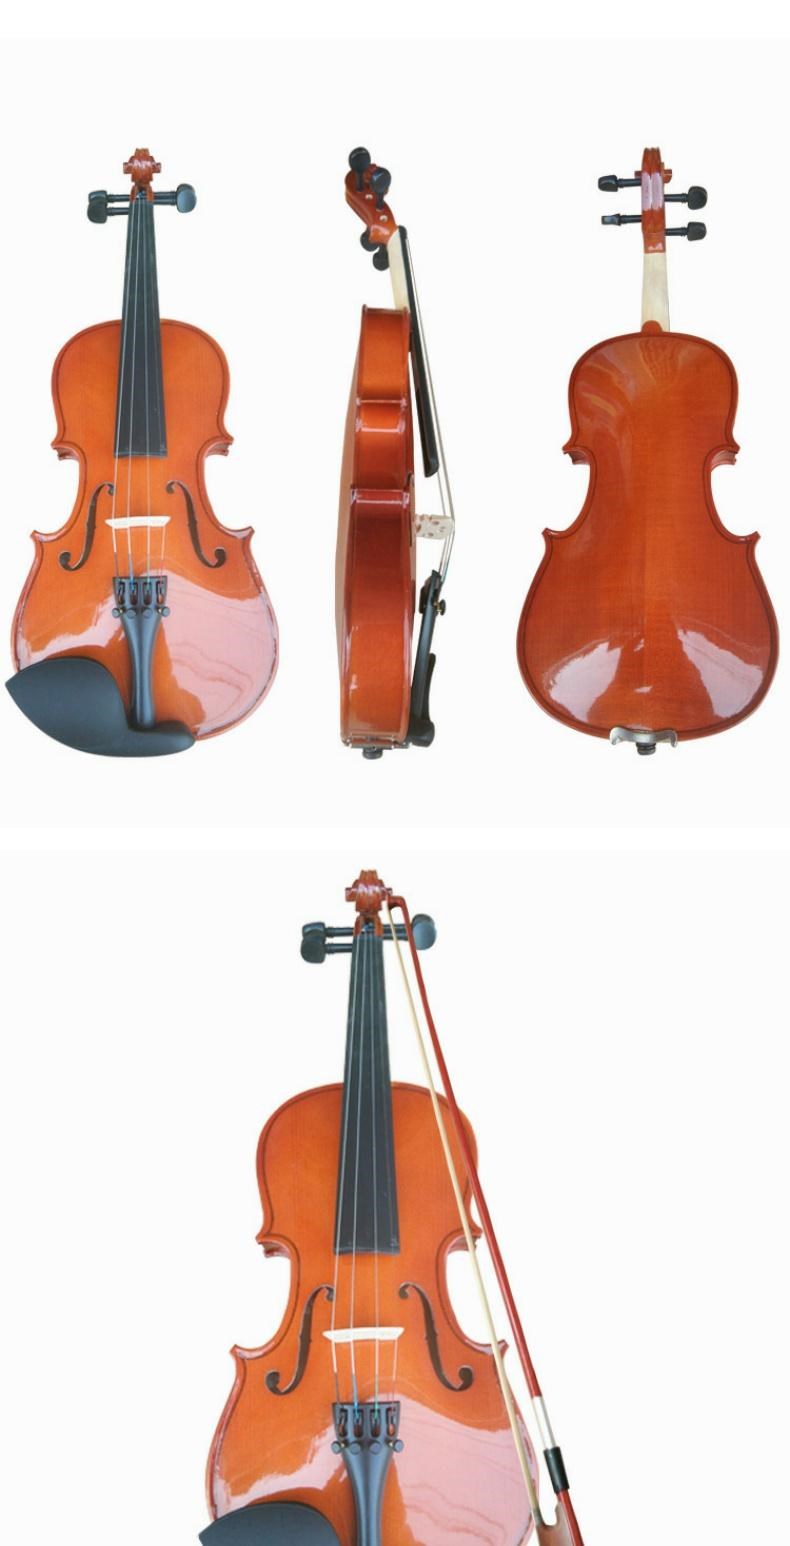 Người mới bắt đầu hoàn toàn bằng tay cũng có thể chơi các nhạc cụ violin bằng gỗ nhẹ. - Nhạc cụ phương Tây